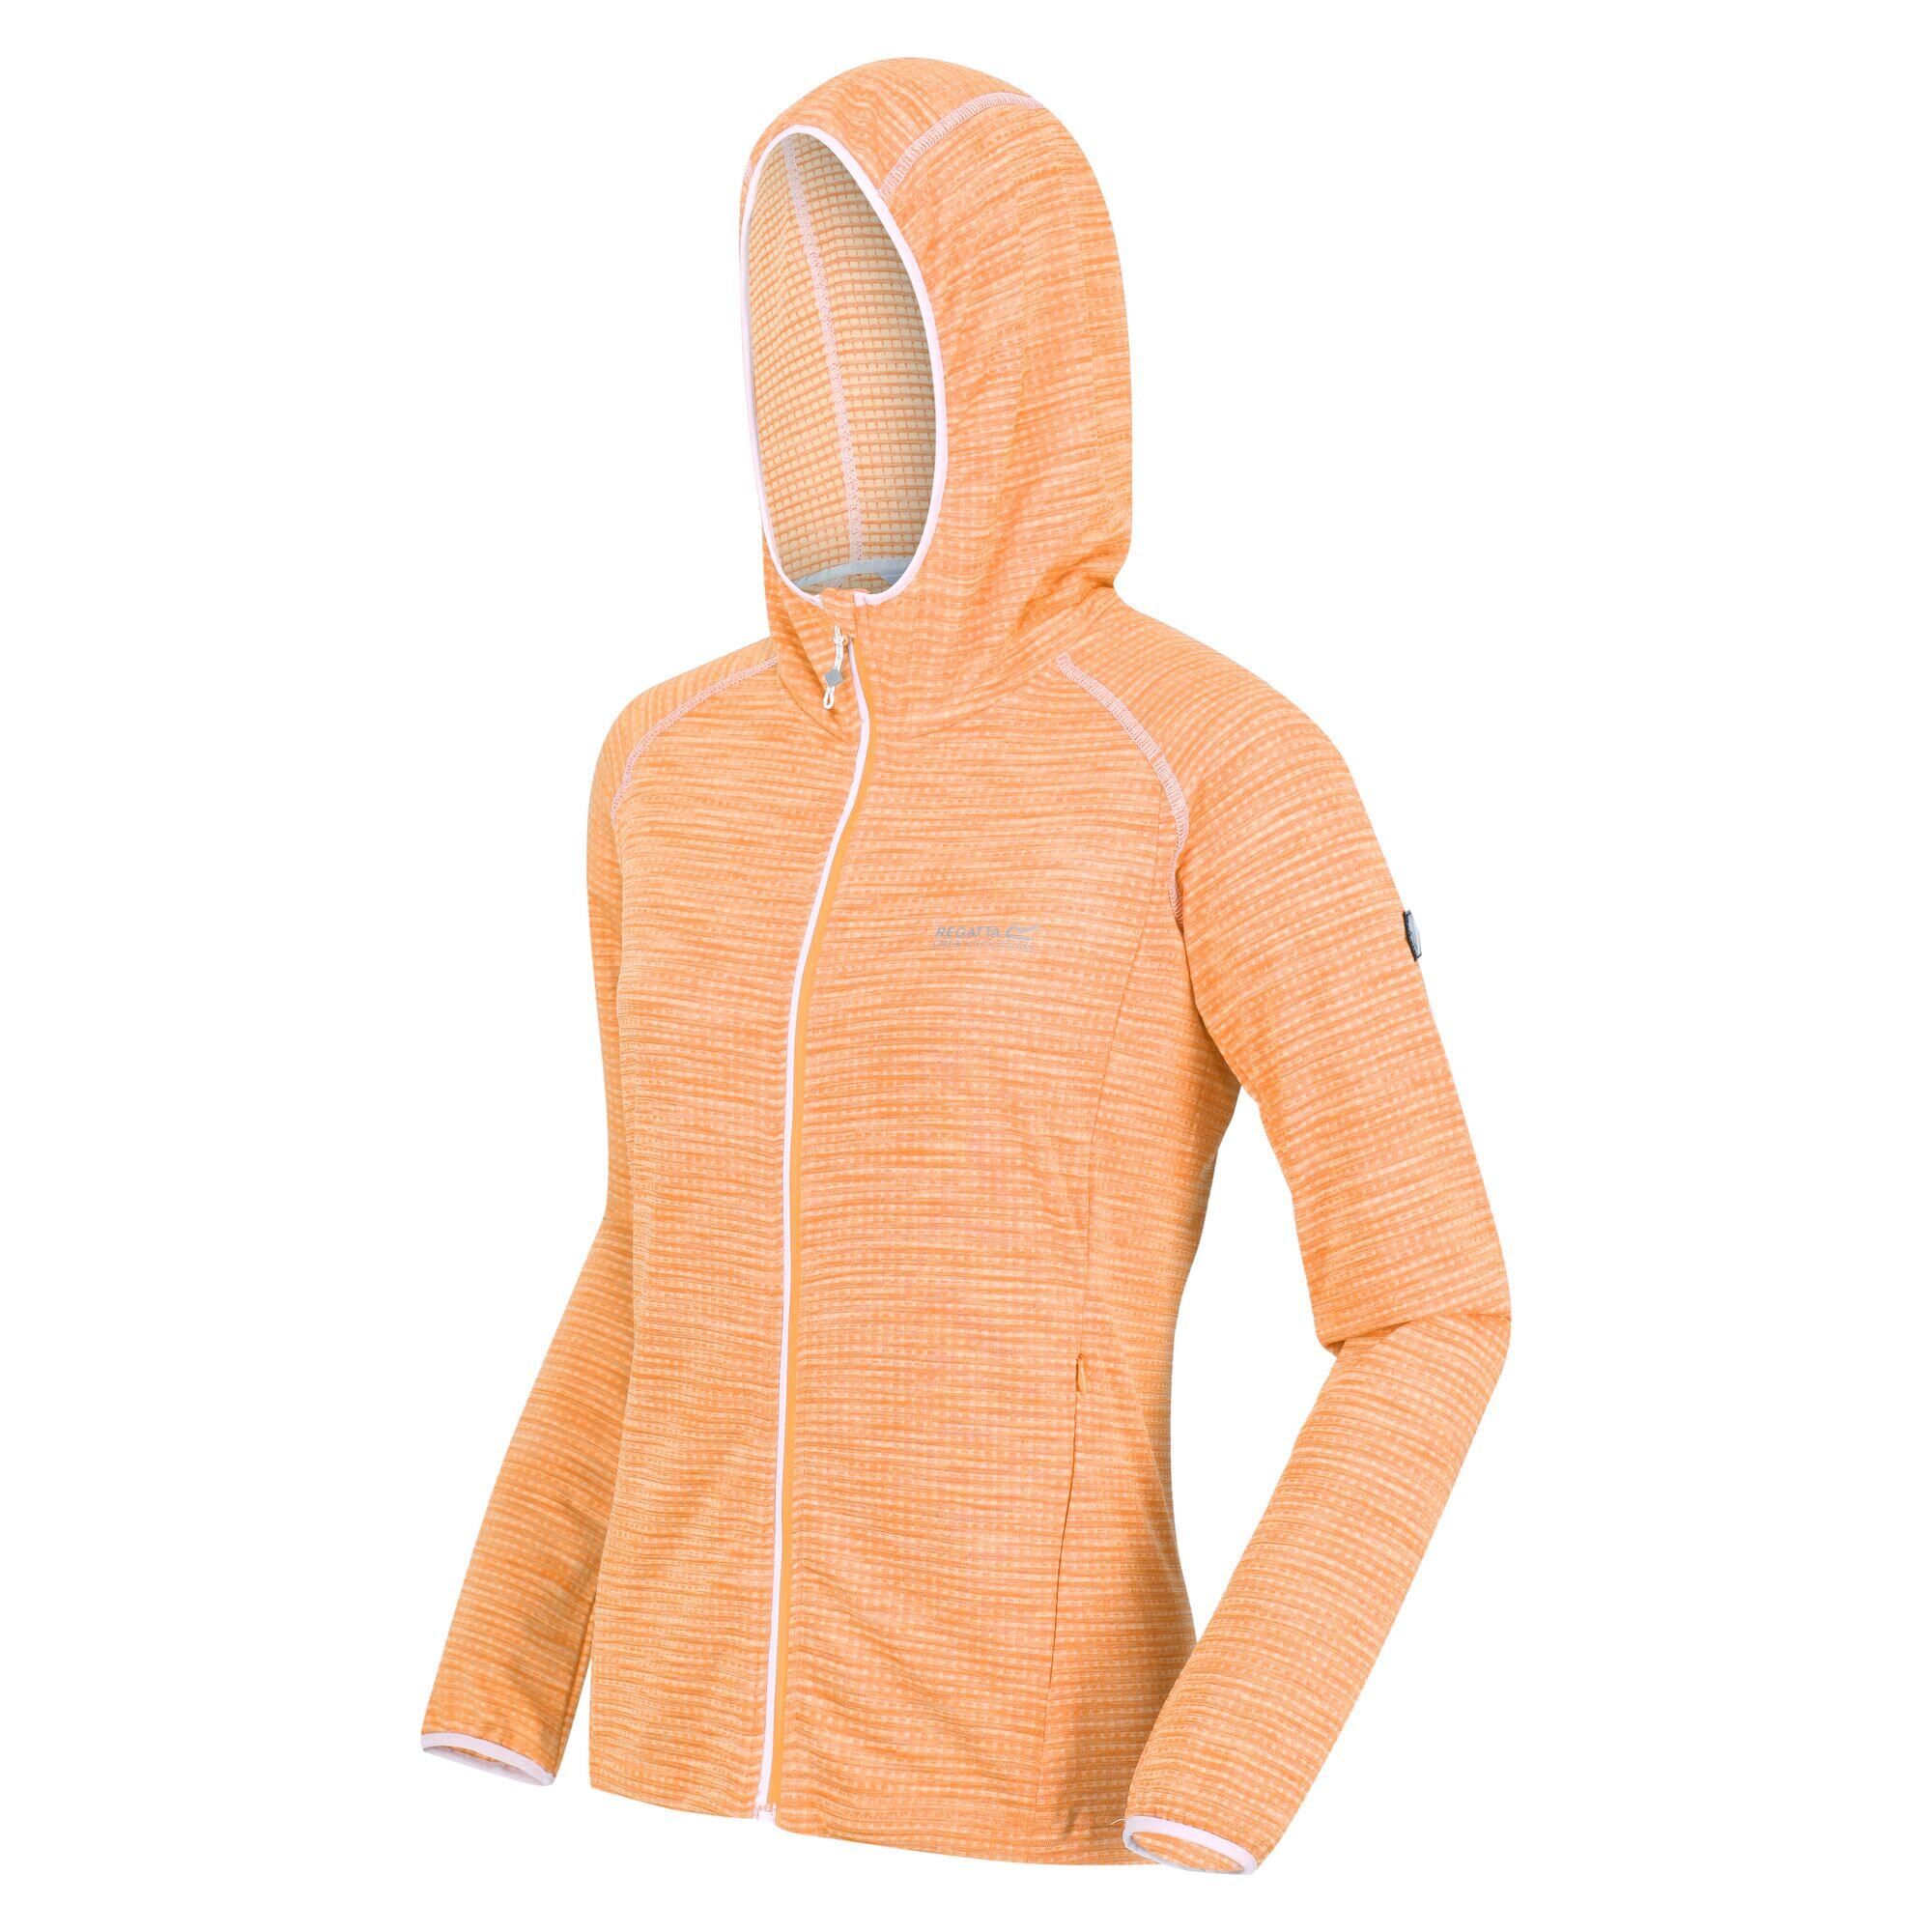 Yonder Women's Hiking Full Zip Hoodie - Papaya Orange 4/7